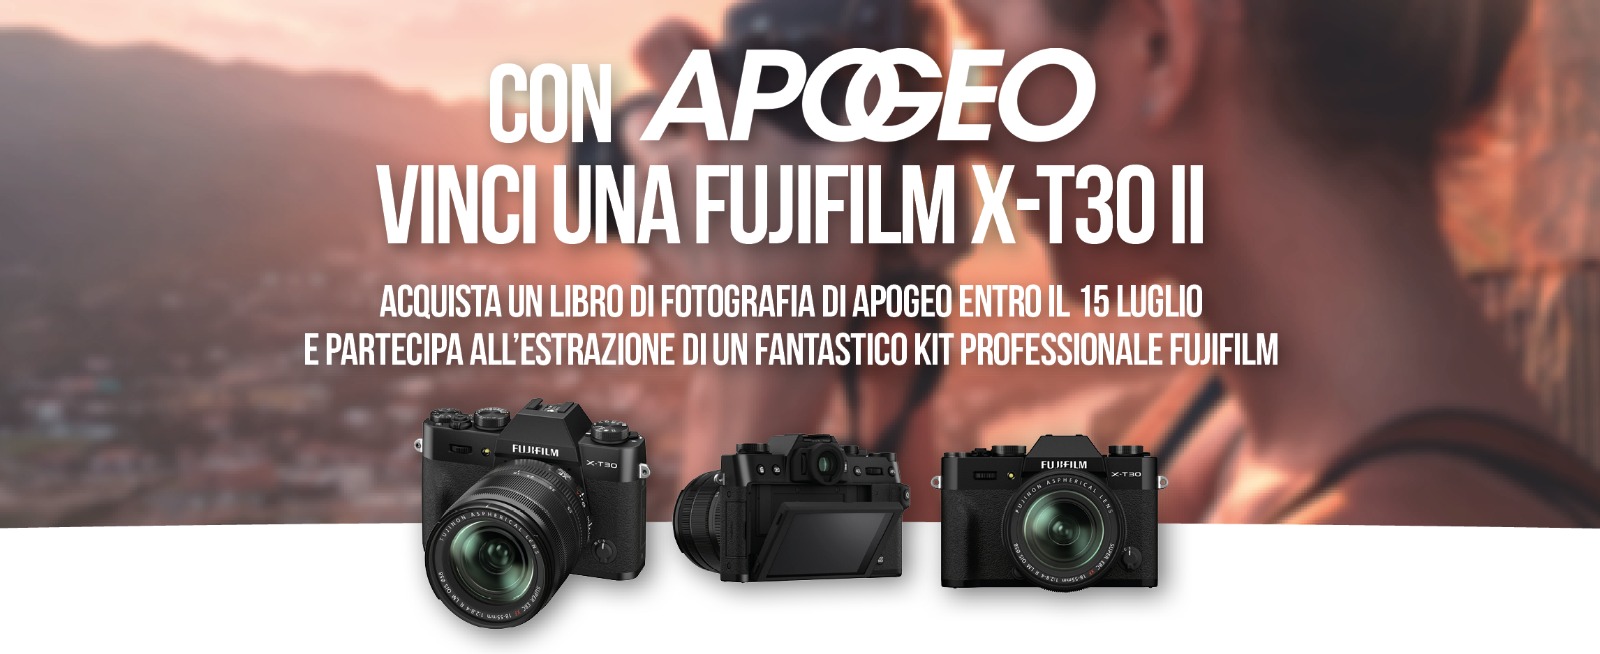 Partecipa al concorso: con Apogeo vinci una fotocamera FUJIFILM X-T30 II